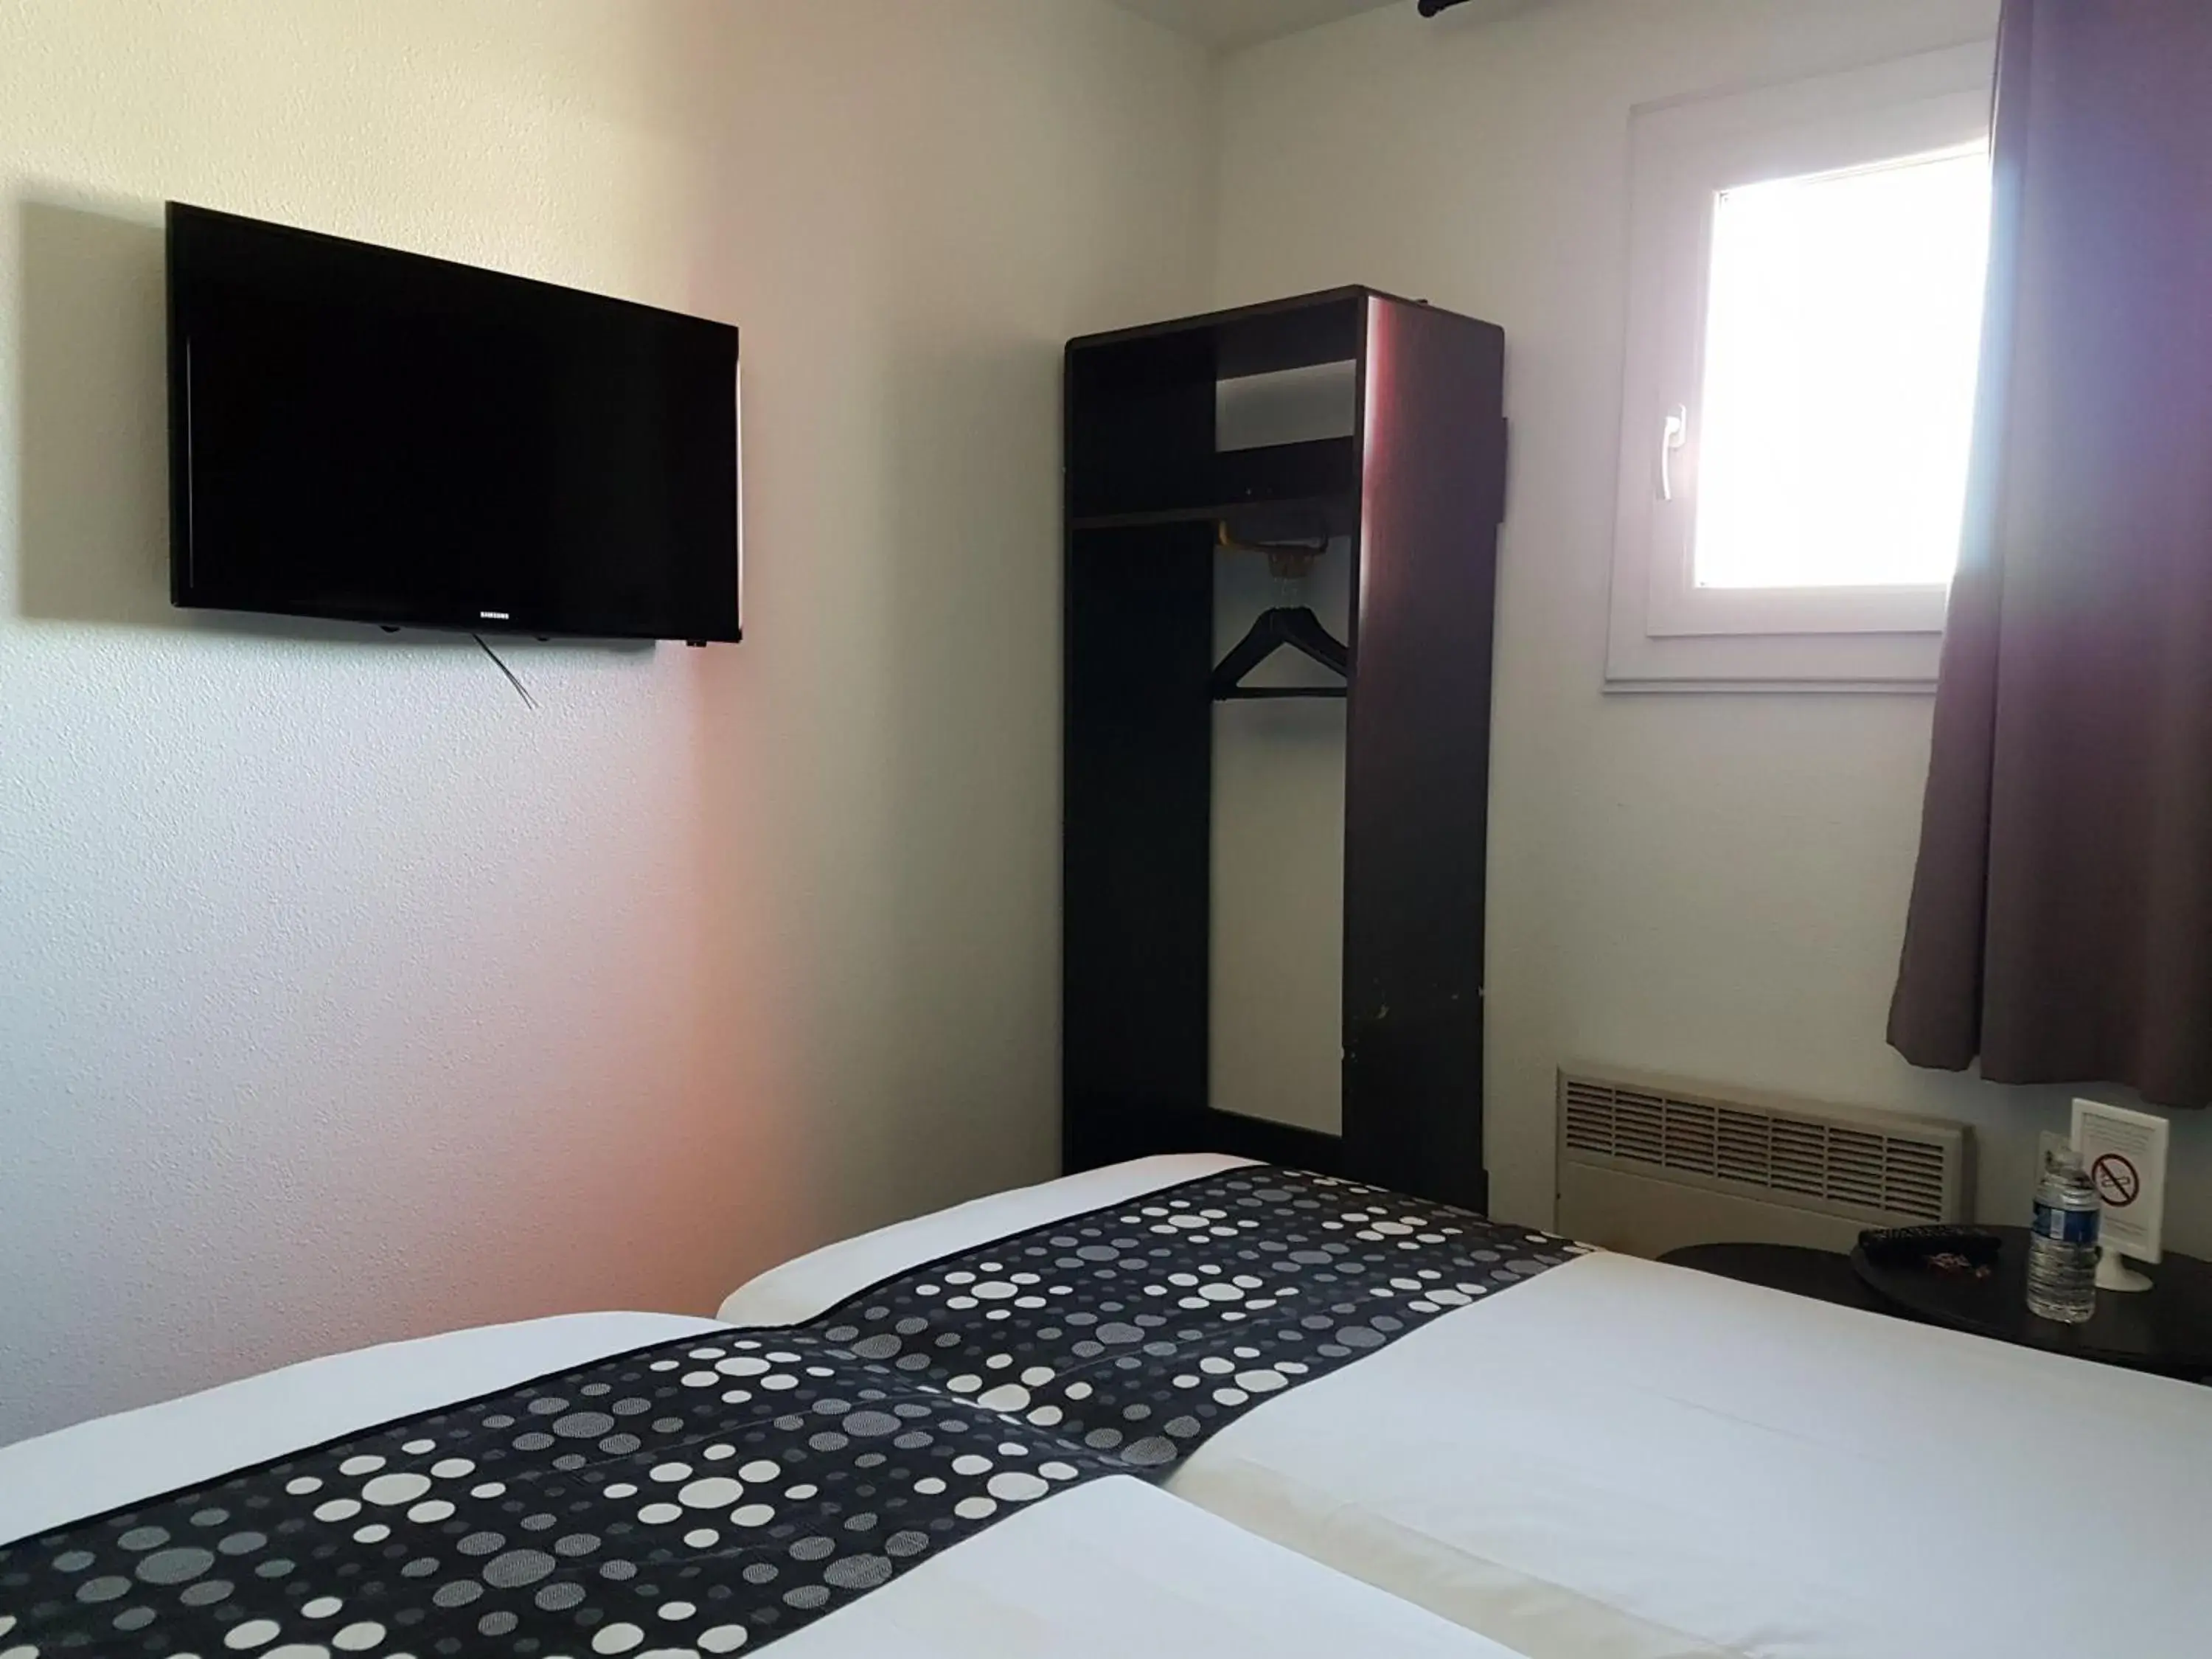 Bed, Room Photo in Best Hotel - Montsoult La Croix Verte